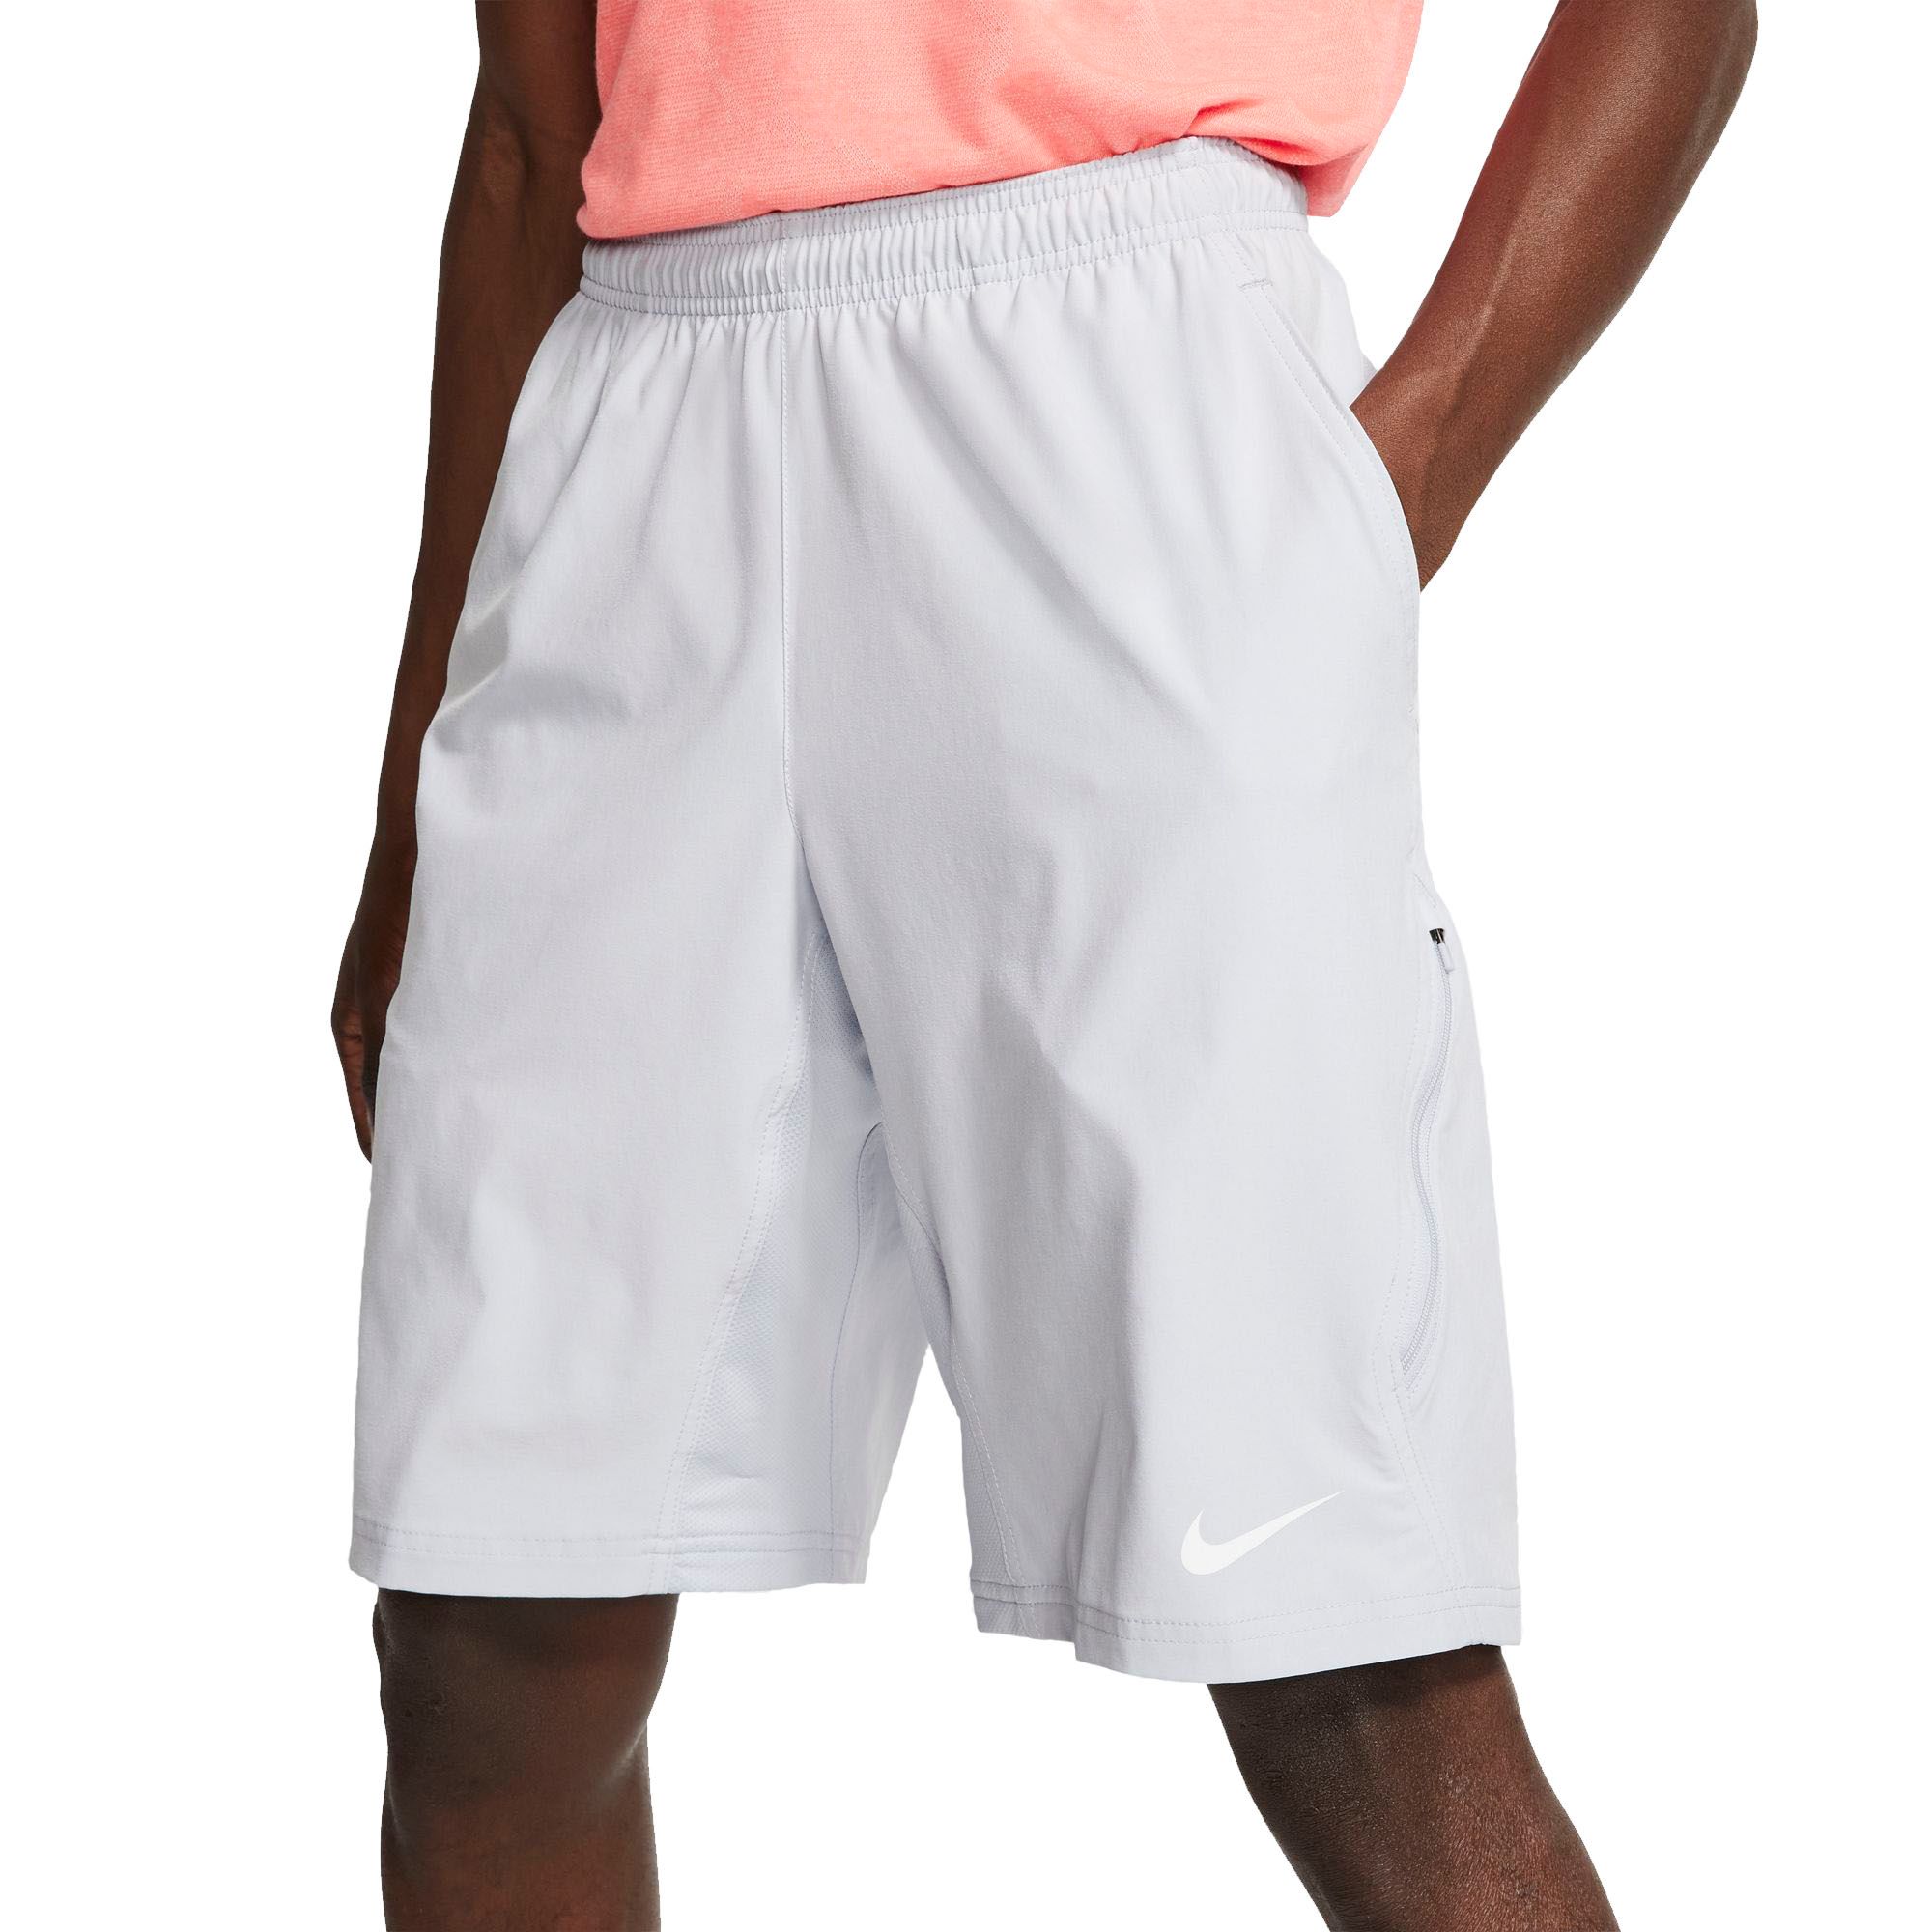 N.E.T 11'' Woven Tennis Shorts 